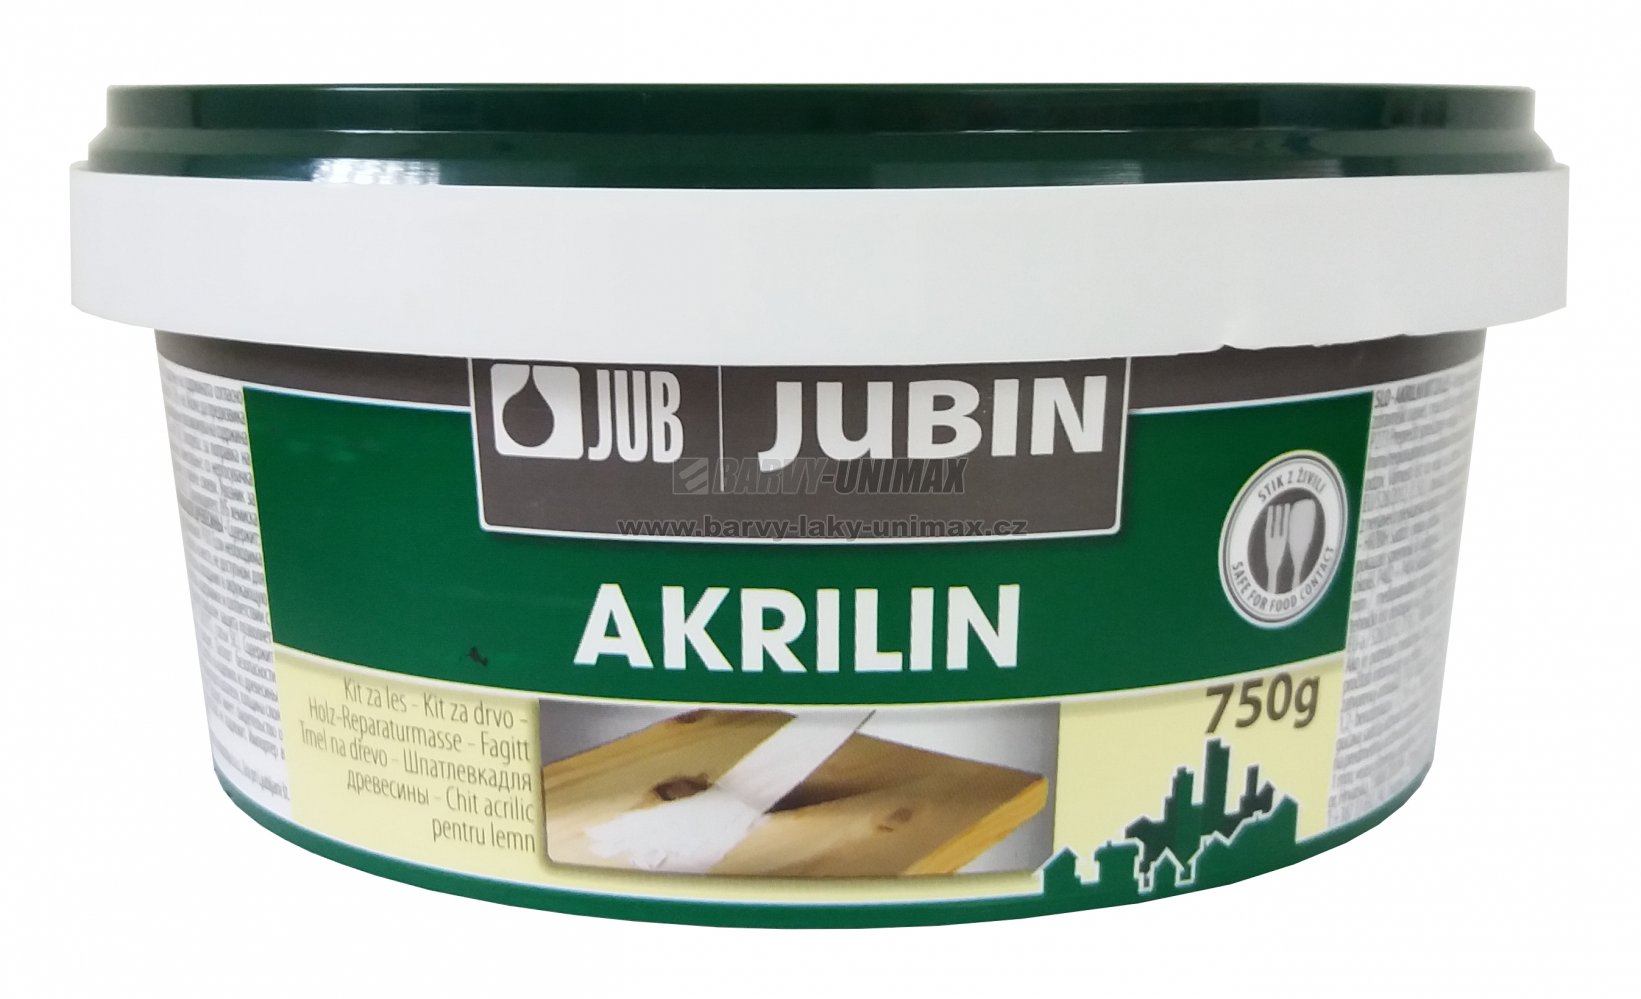 JUB JUBIN Akrilin Biela,750g